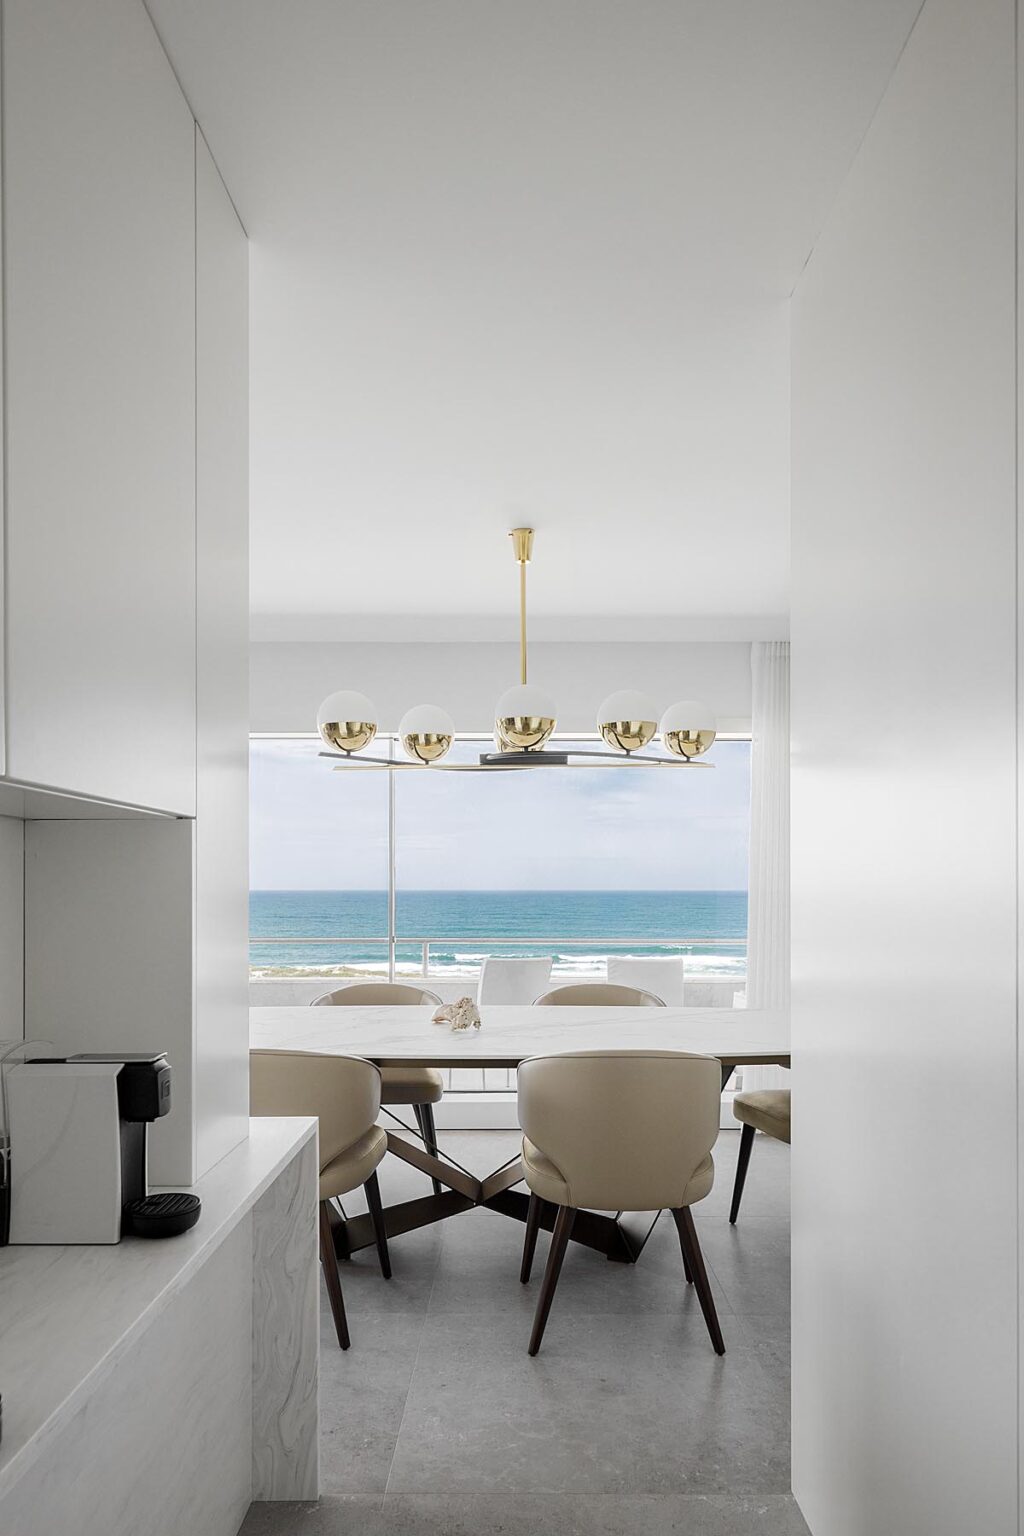 Eine völlig weiße Wohnung mit einem atemberaubenden Blick auf das Meer. Wohnung Sao Felix Paolo Moreira Architectures